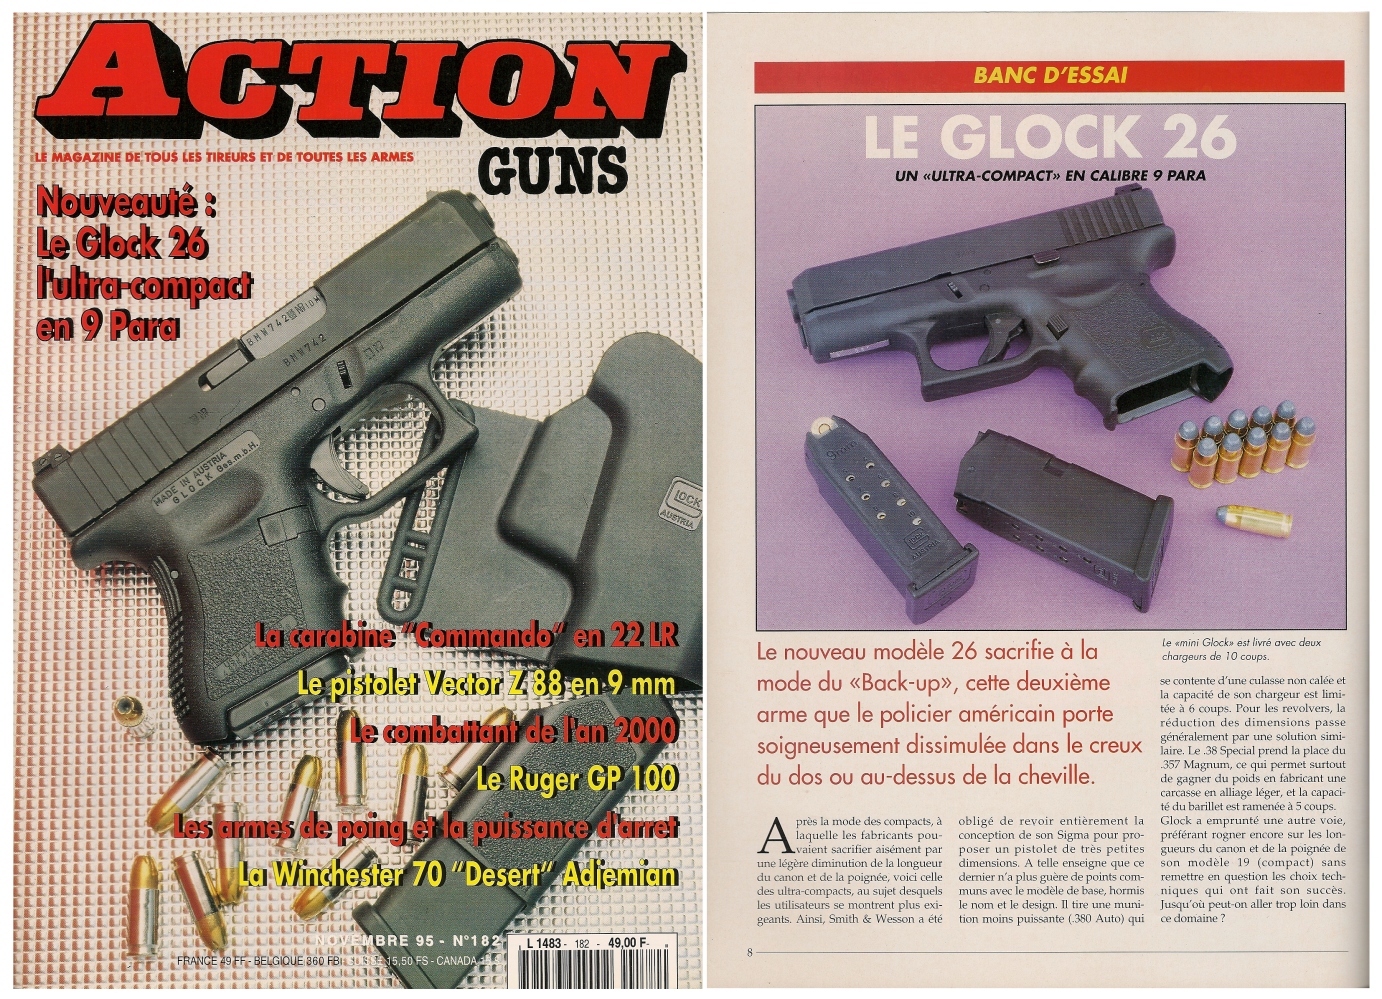 Le banc d’essai du Glock modèle 26 a été publié sur 6 pages dans le magazine Action Guns n°182 (novembre 1995). 